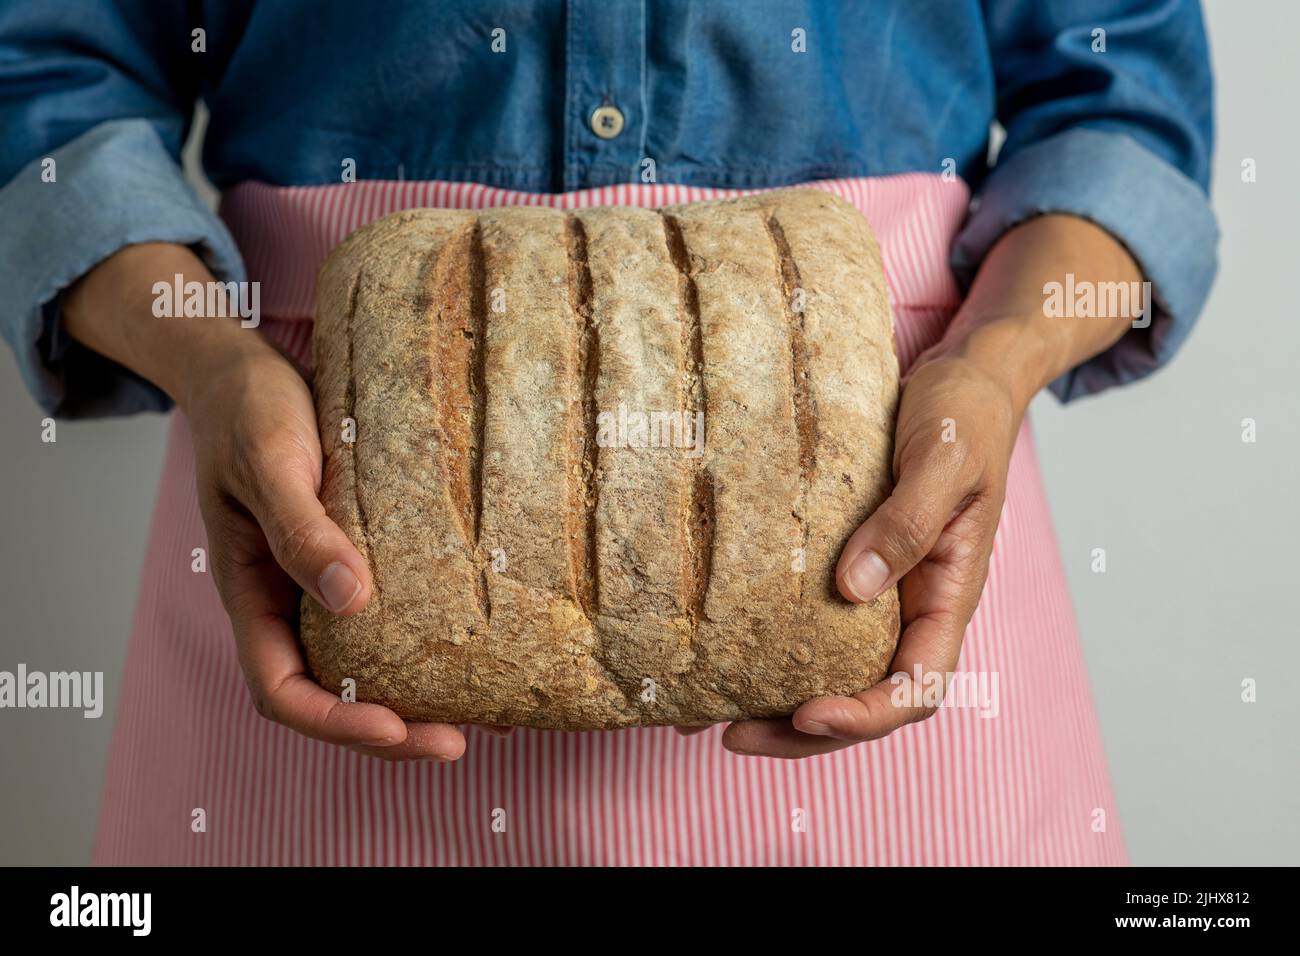 Jeune femme tenant du pain rustique fraîchement fait maison - photo de stock Banque D'Images